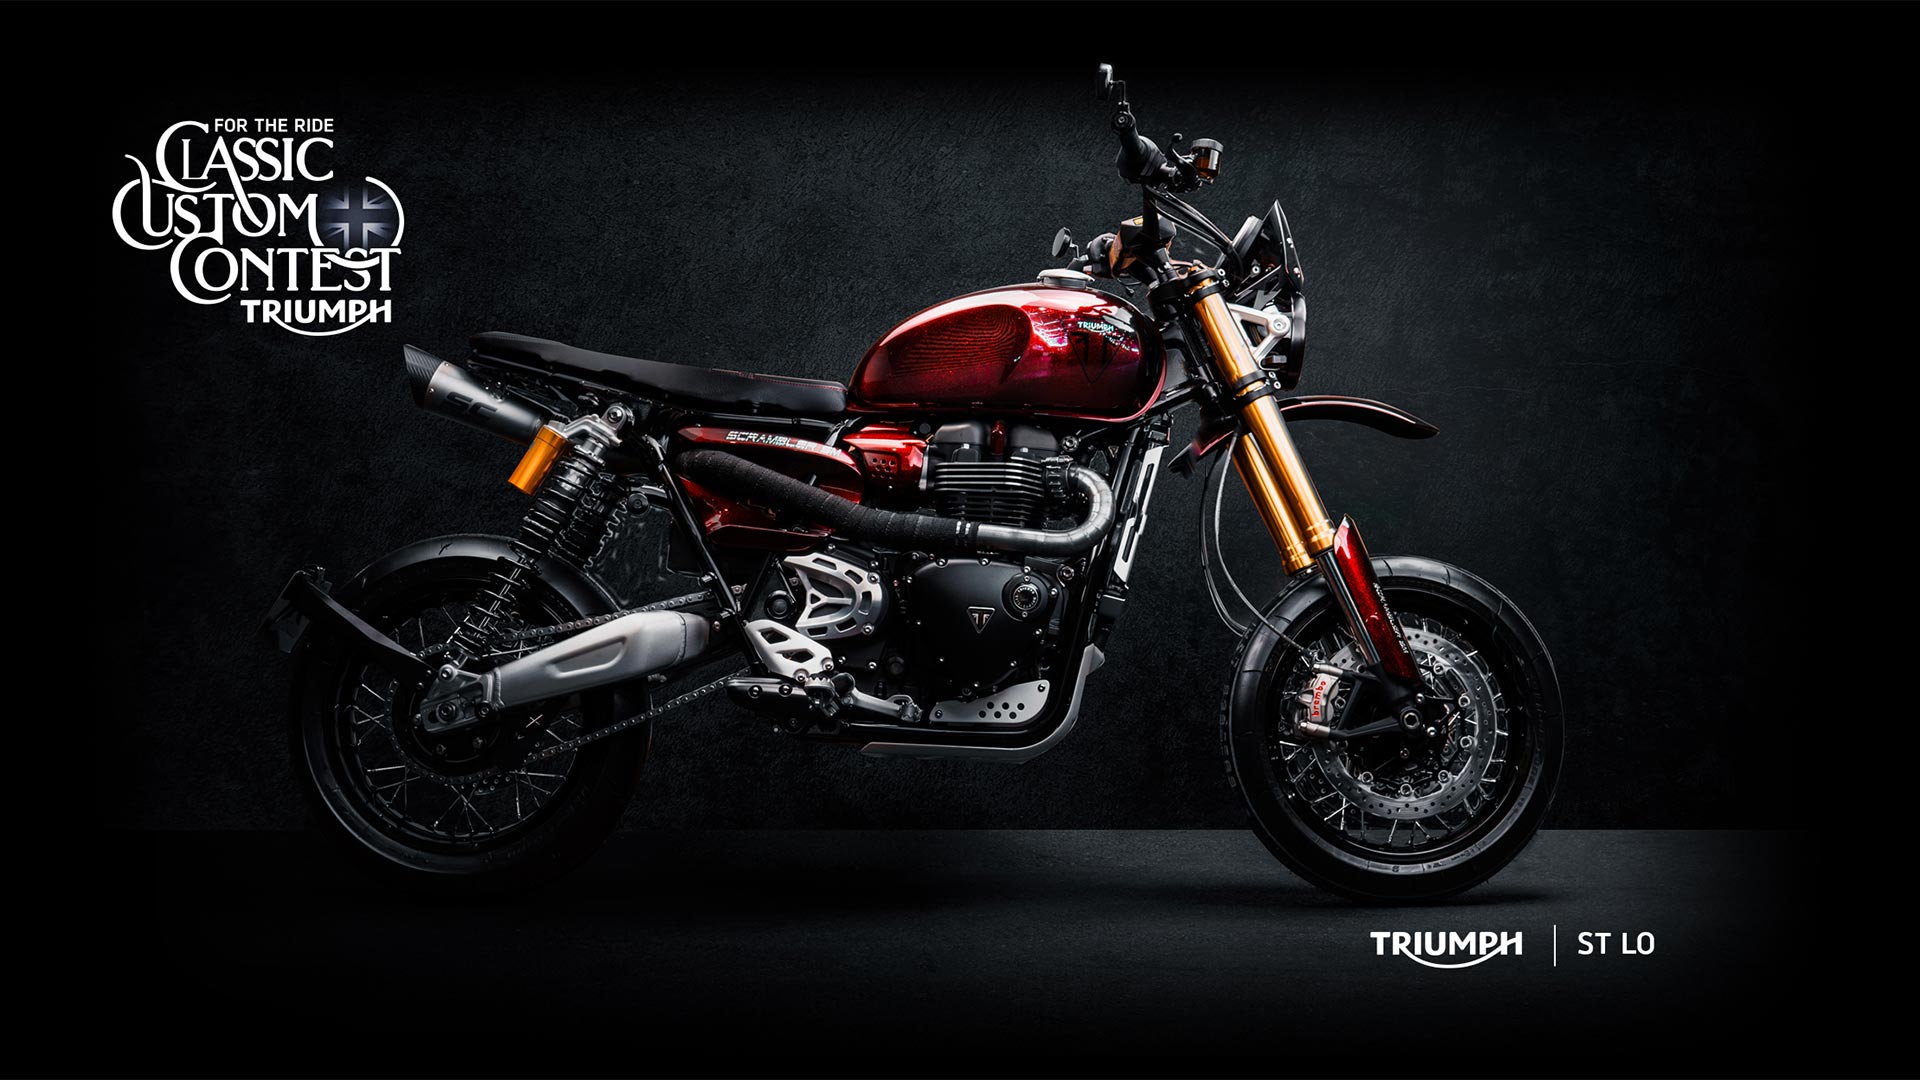 Triumph-custom-classic-contest-DEALER-ST-LO-1920x1080